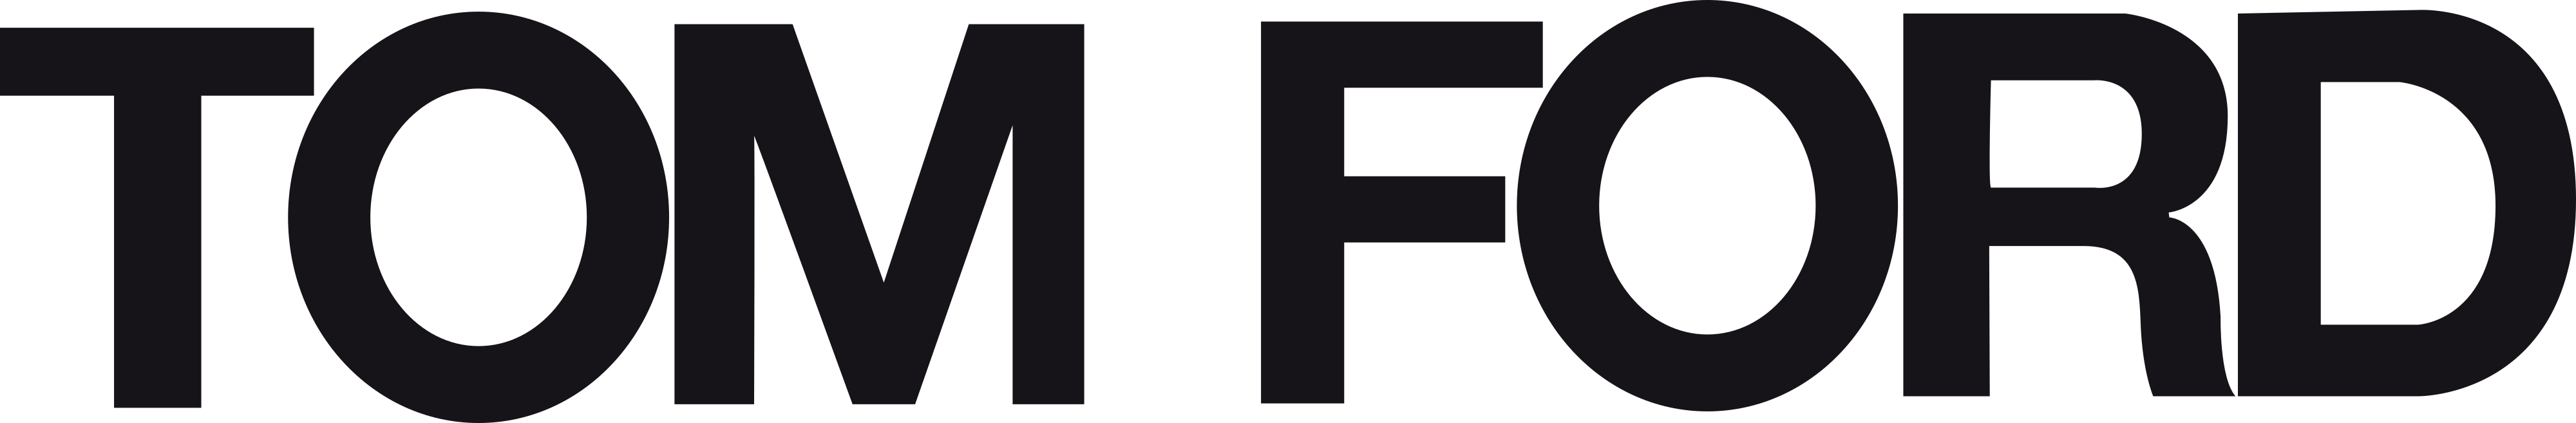 Tom Ford logo - download.